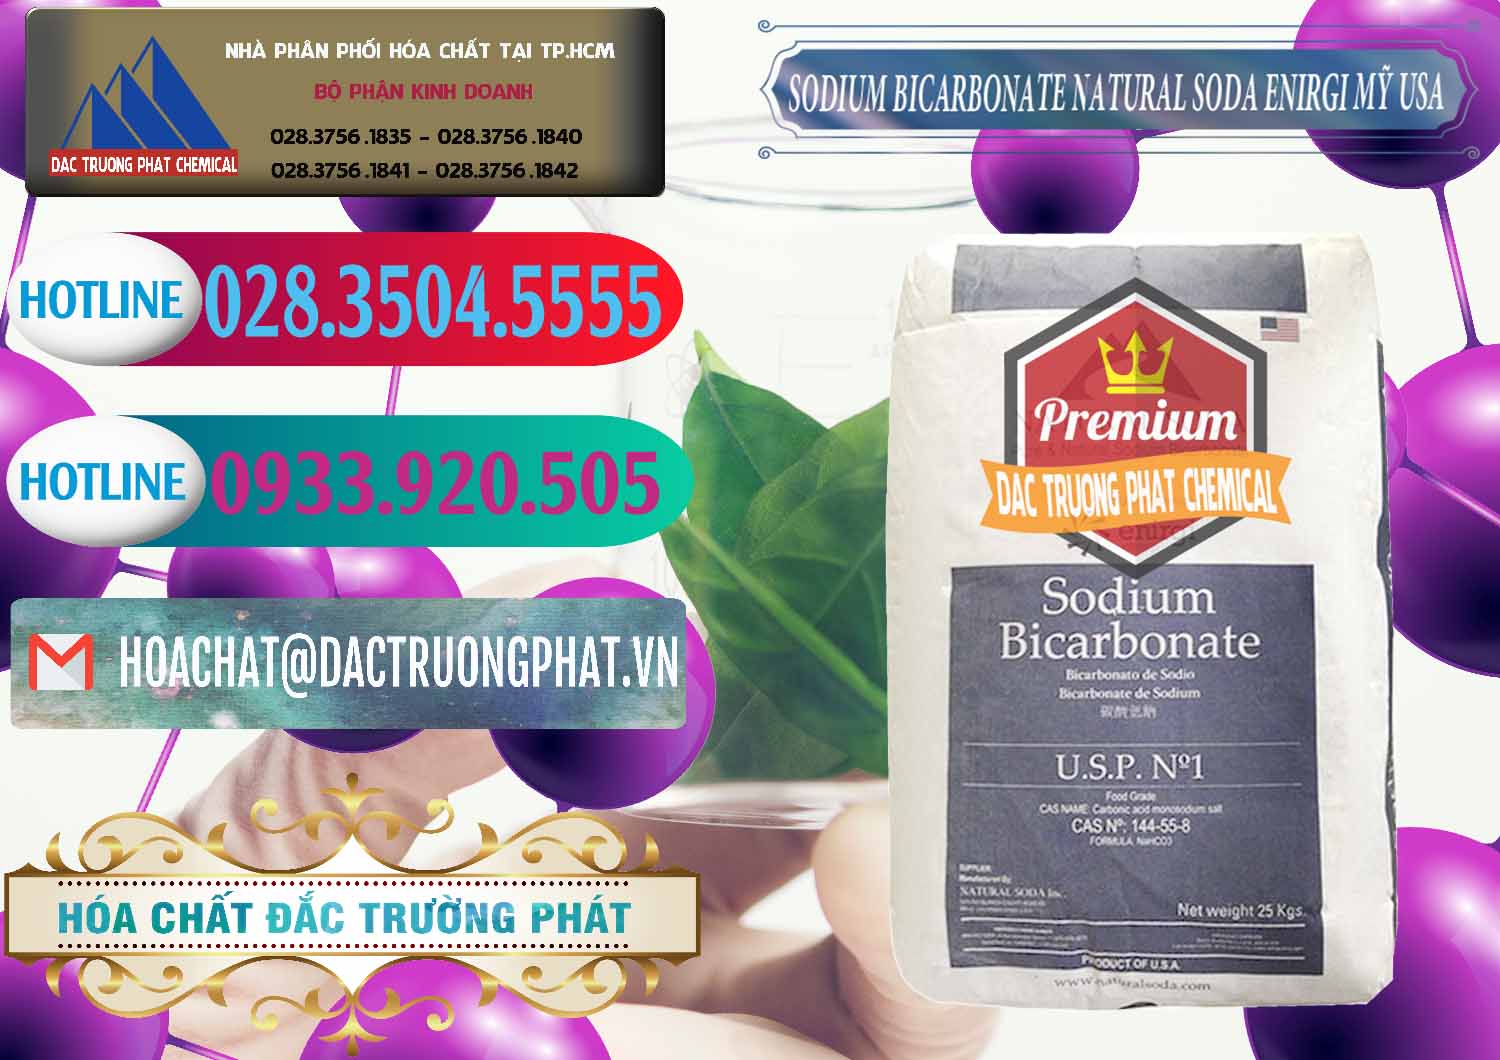 Nơi cung ứng _ bán Sodium Bicarbonate – Bicar NaHCO3 Food Grade Natural Soda Enirgi Mỹ USA - 0257 - Phân phối & cung ứng hóa chất tại TP.HCM - truongphat.vn